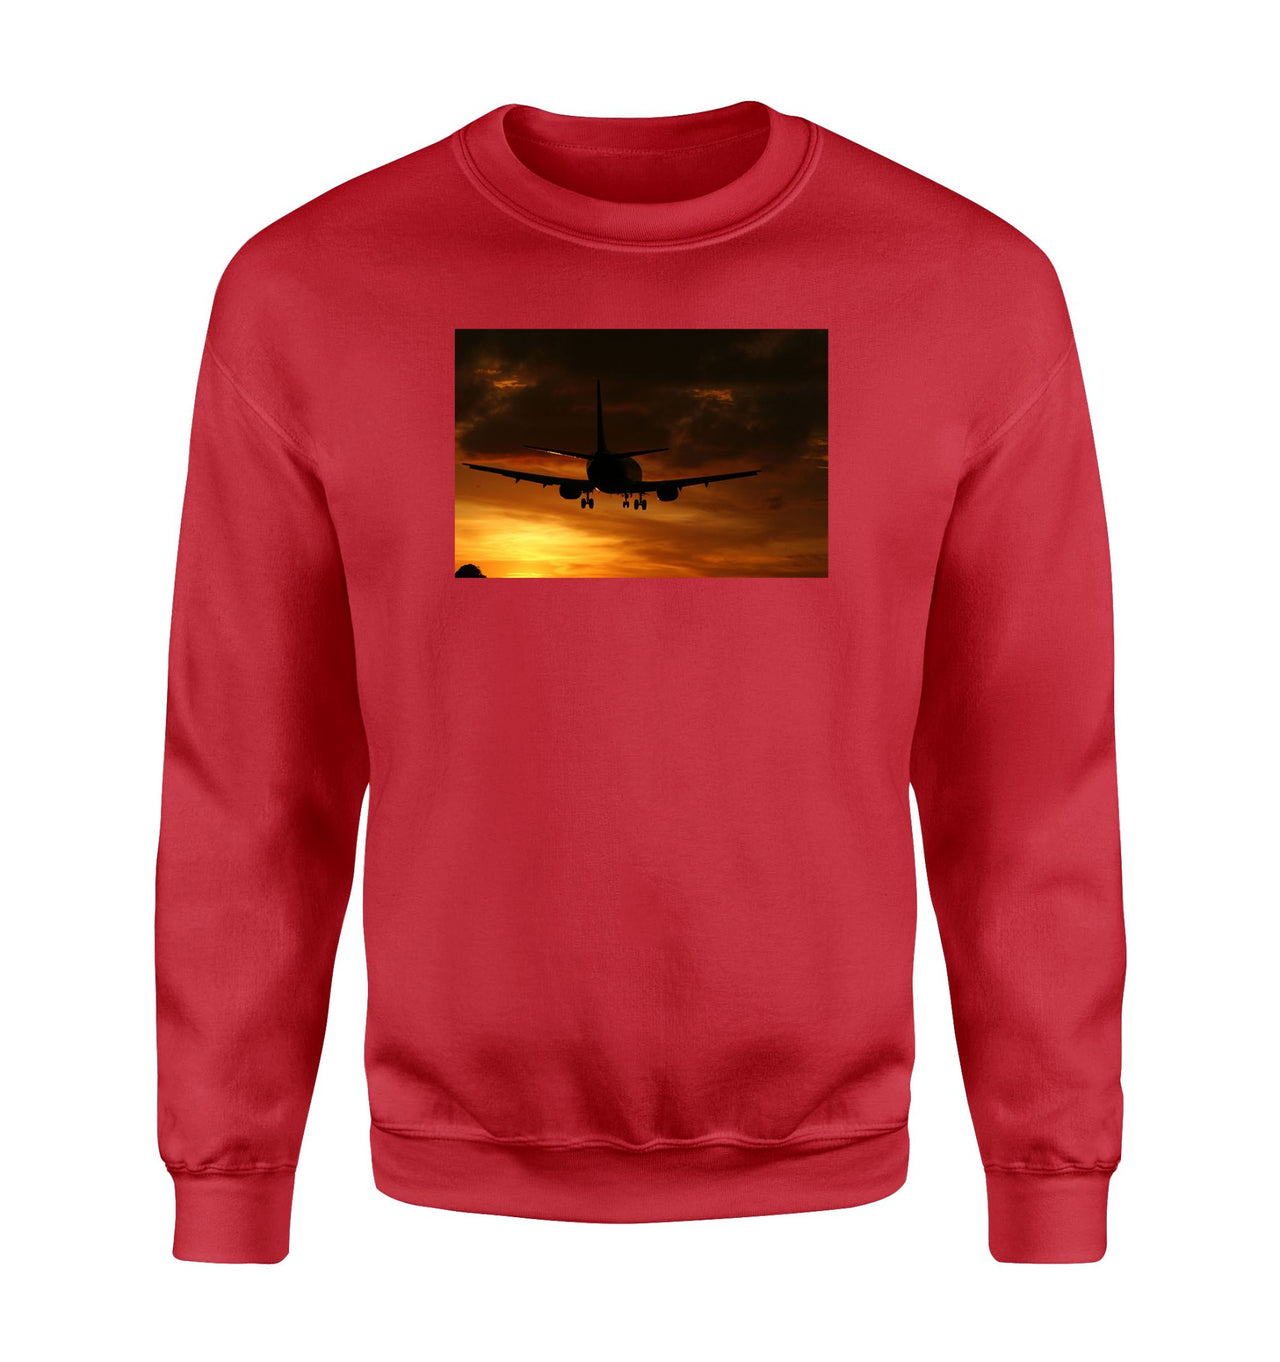 Beautiful Aircraft Landing at Sunset Designed Sweatshirts